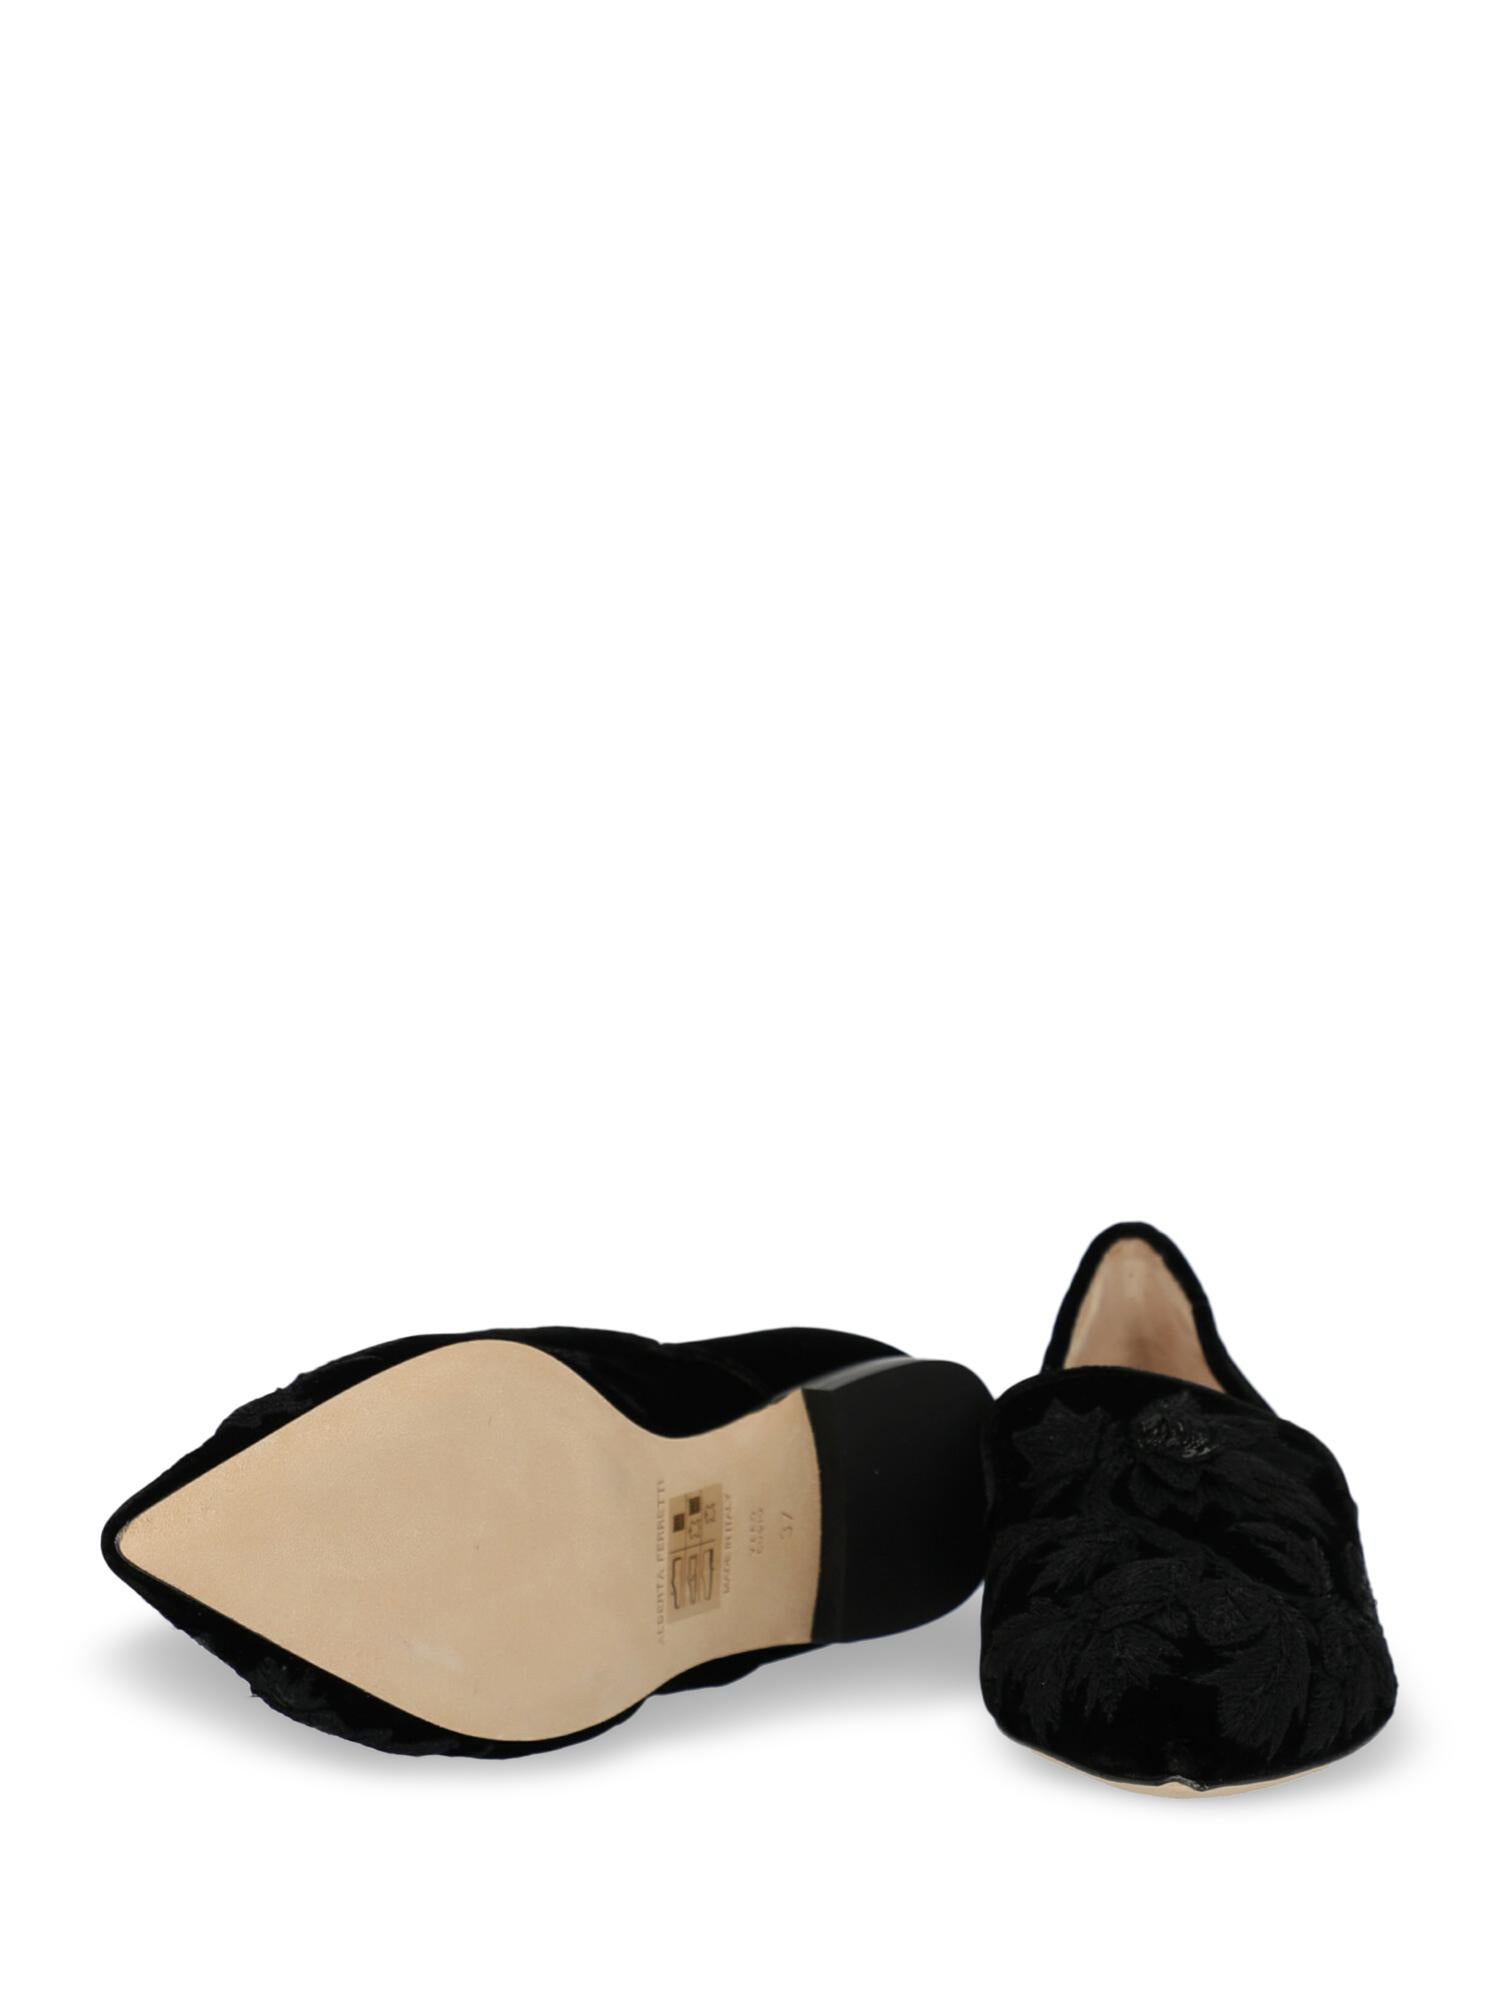 Alberta Ferretti Woman Loafers Black EU 35 In Excellent Condition For Sale In Milan, IT